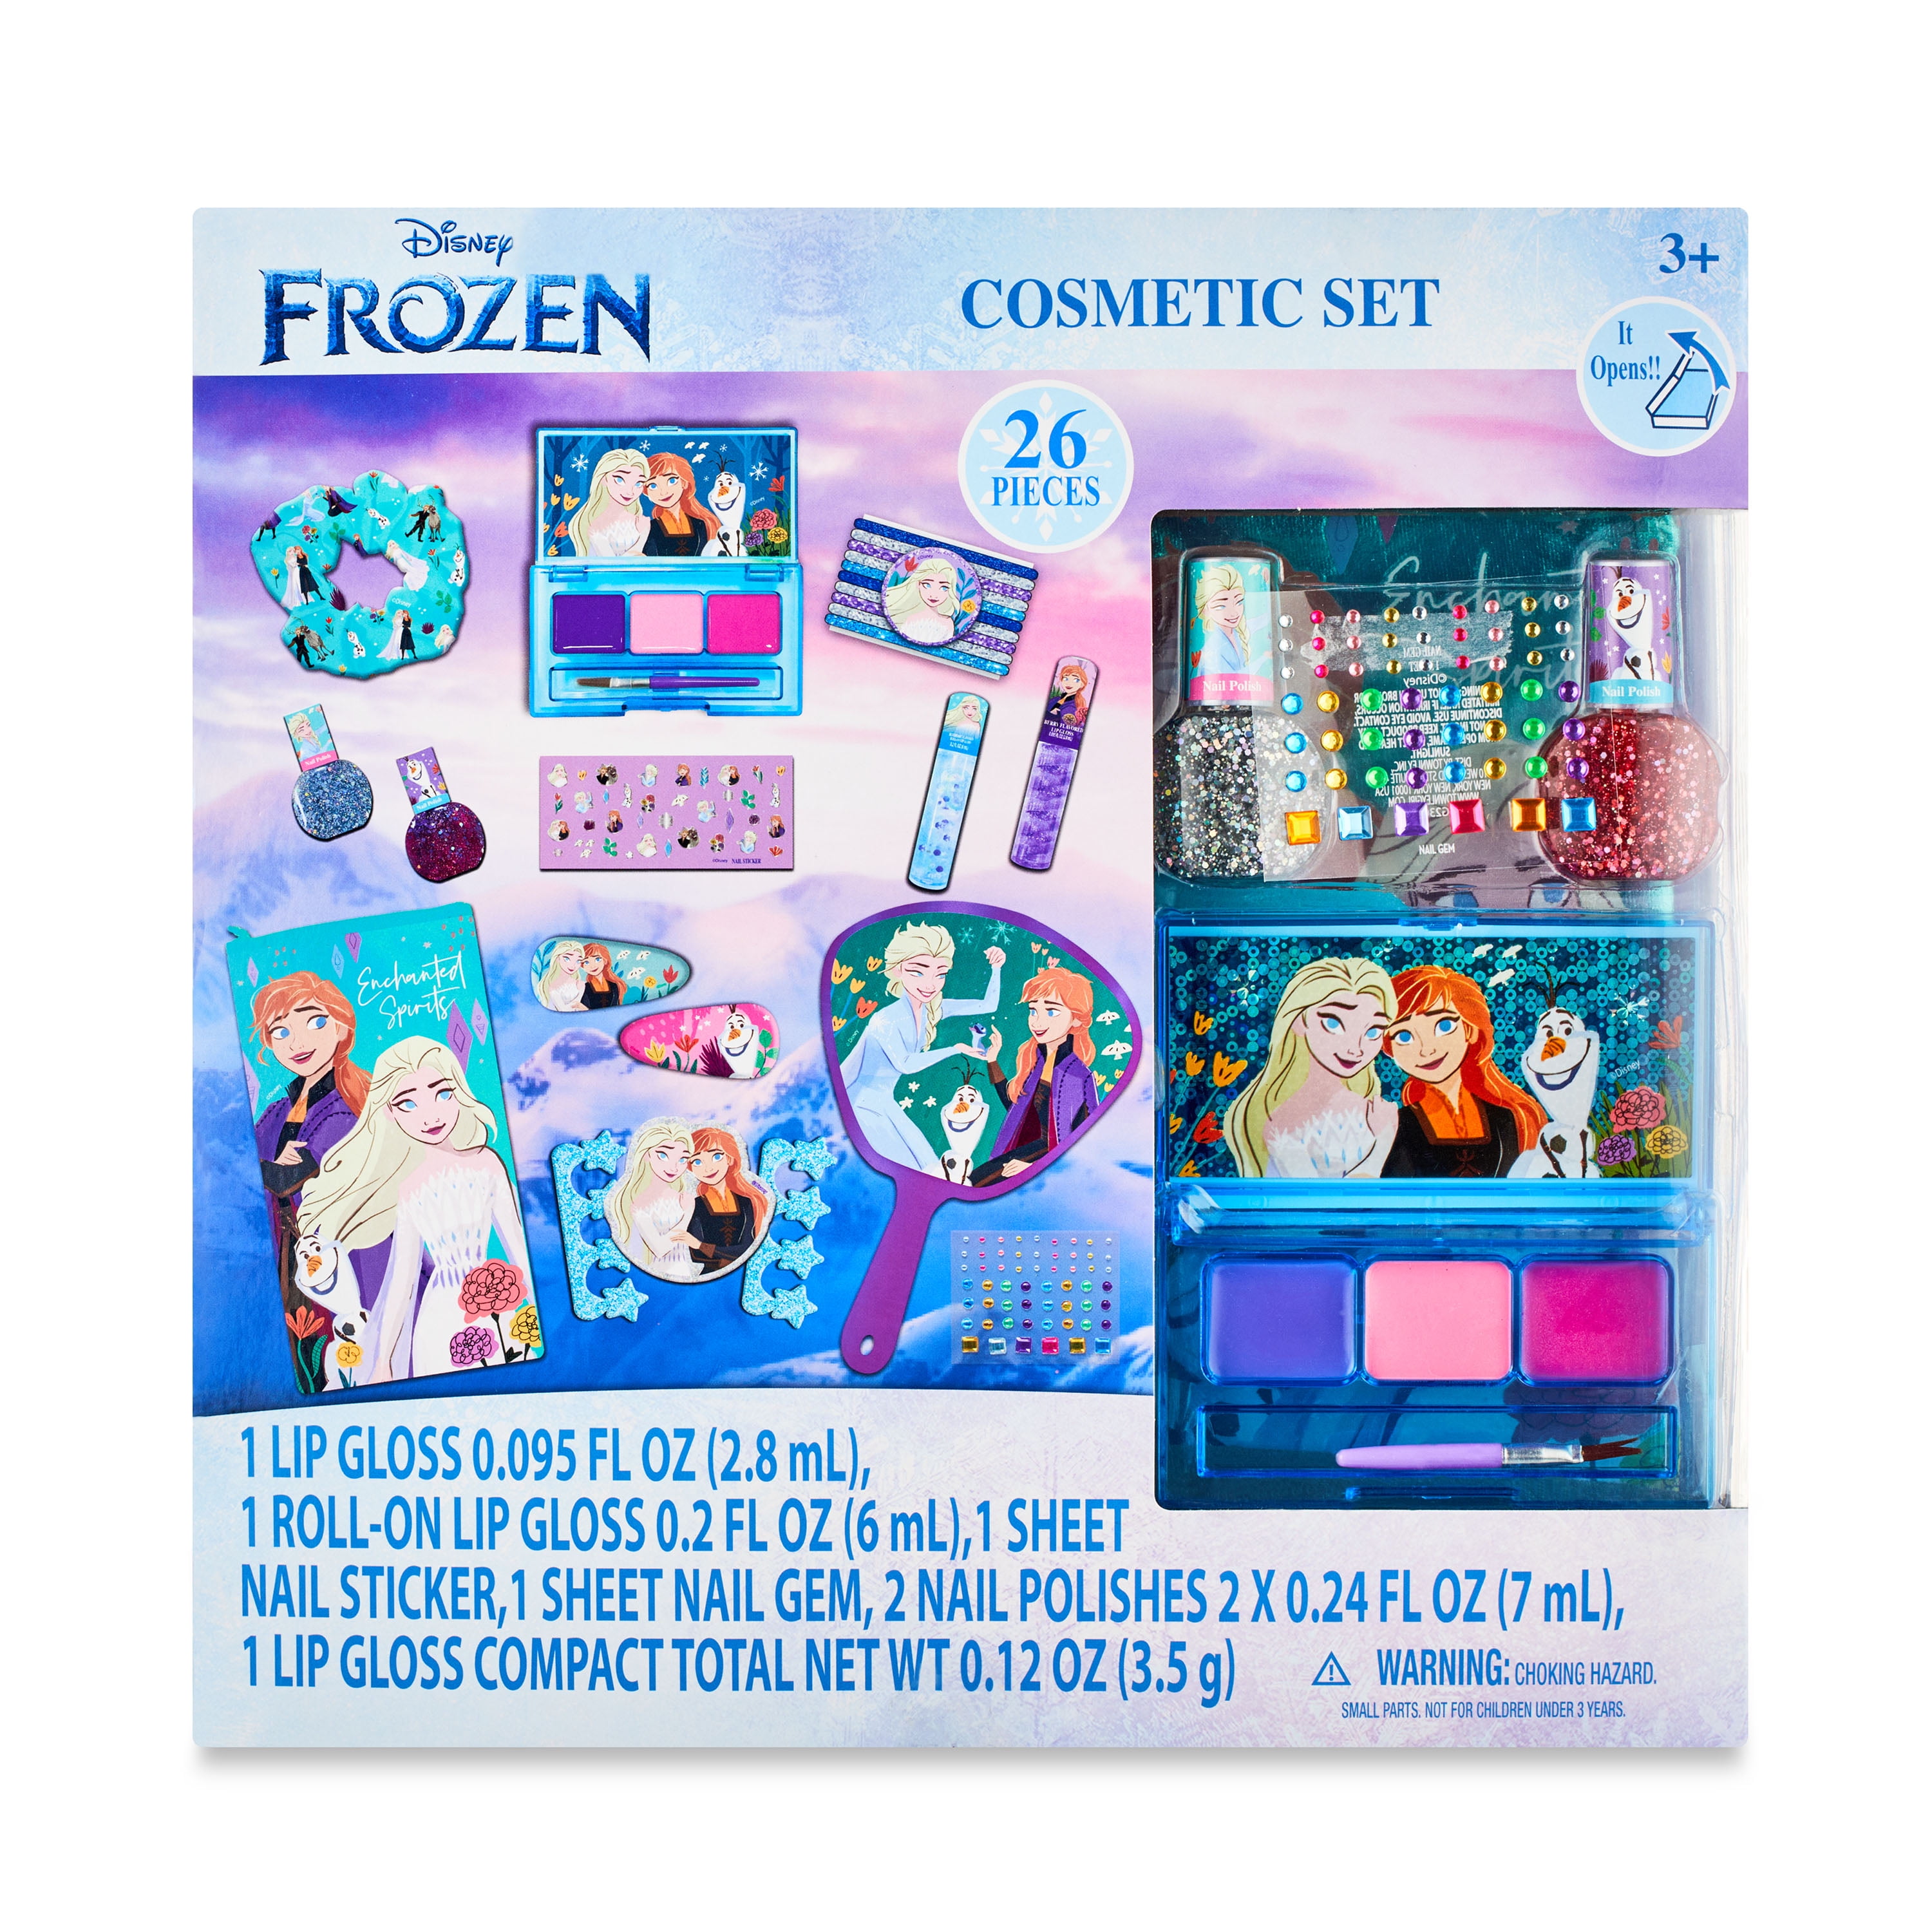 Frozen II 12-Piece Bath Time Activity Set 